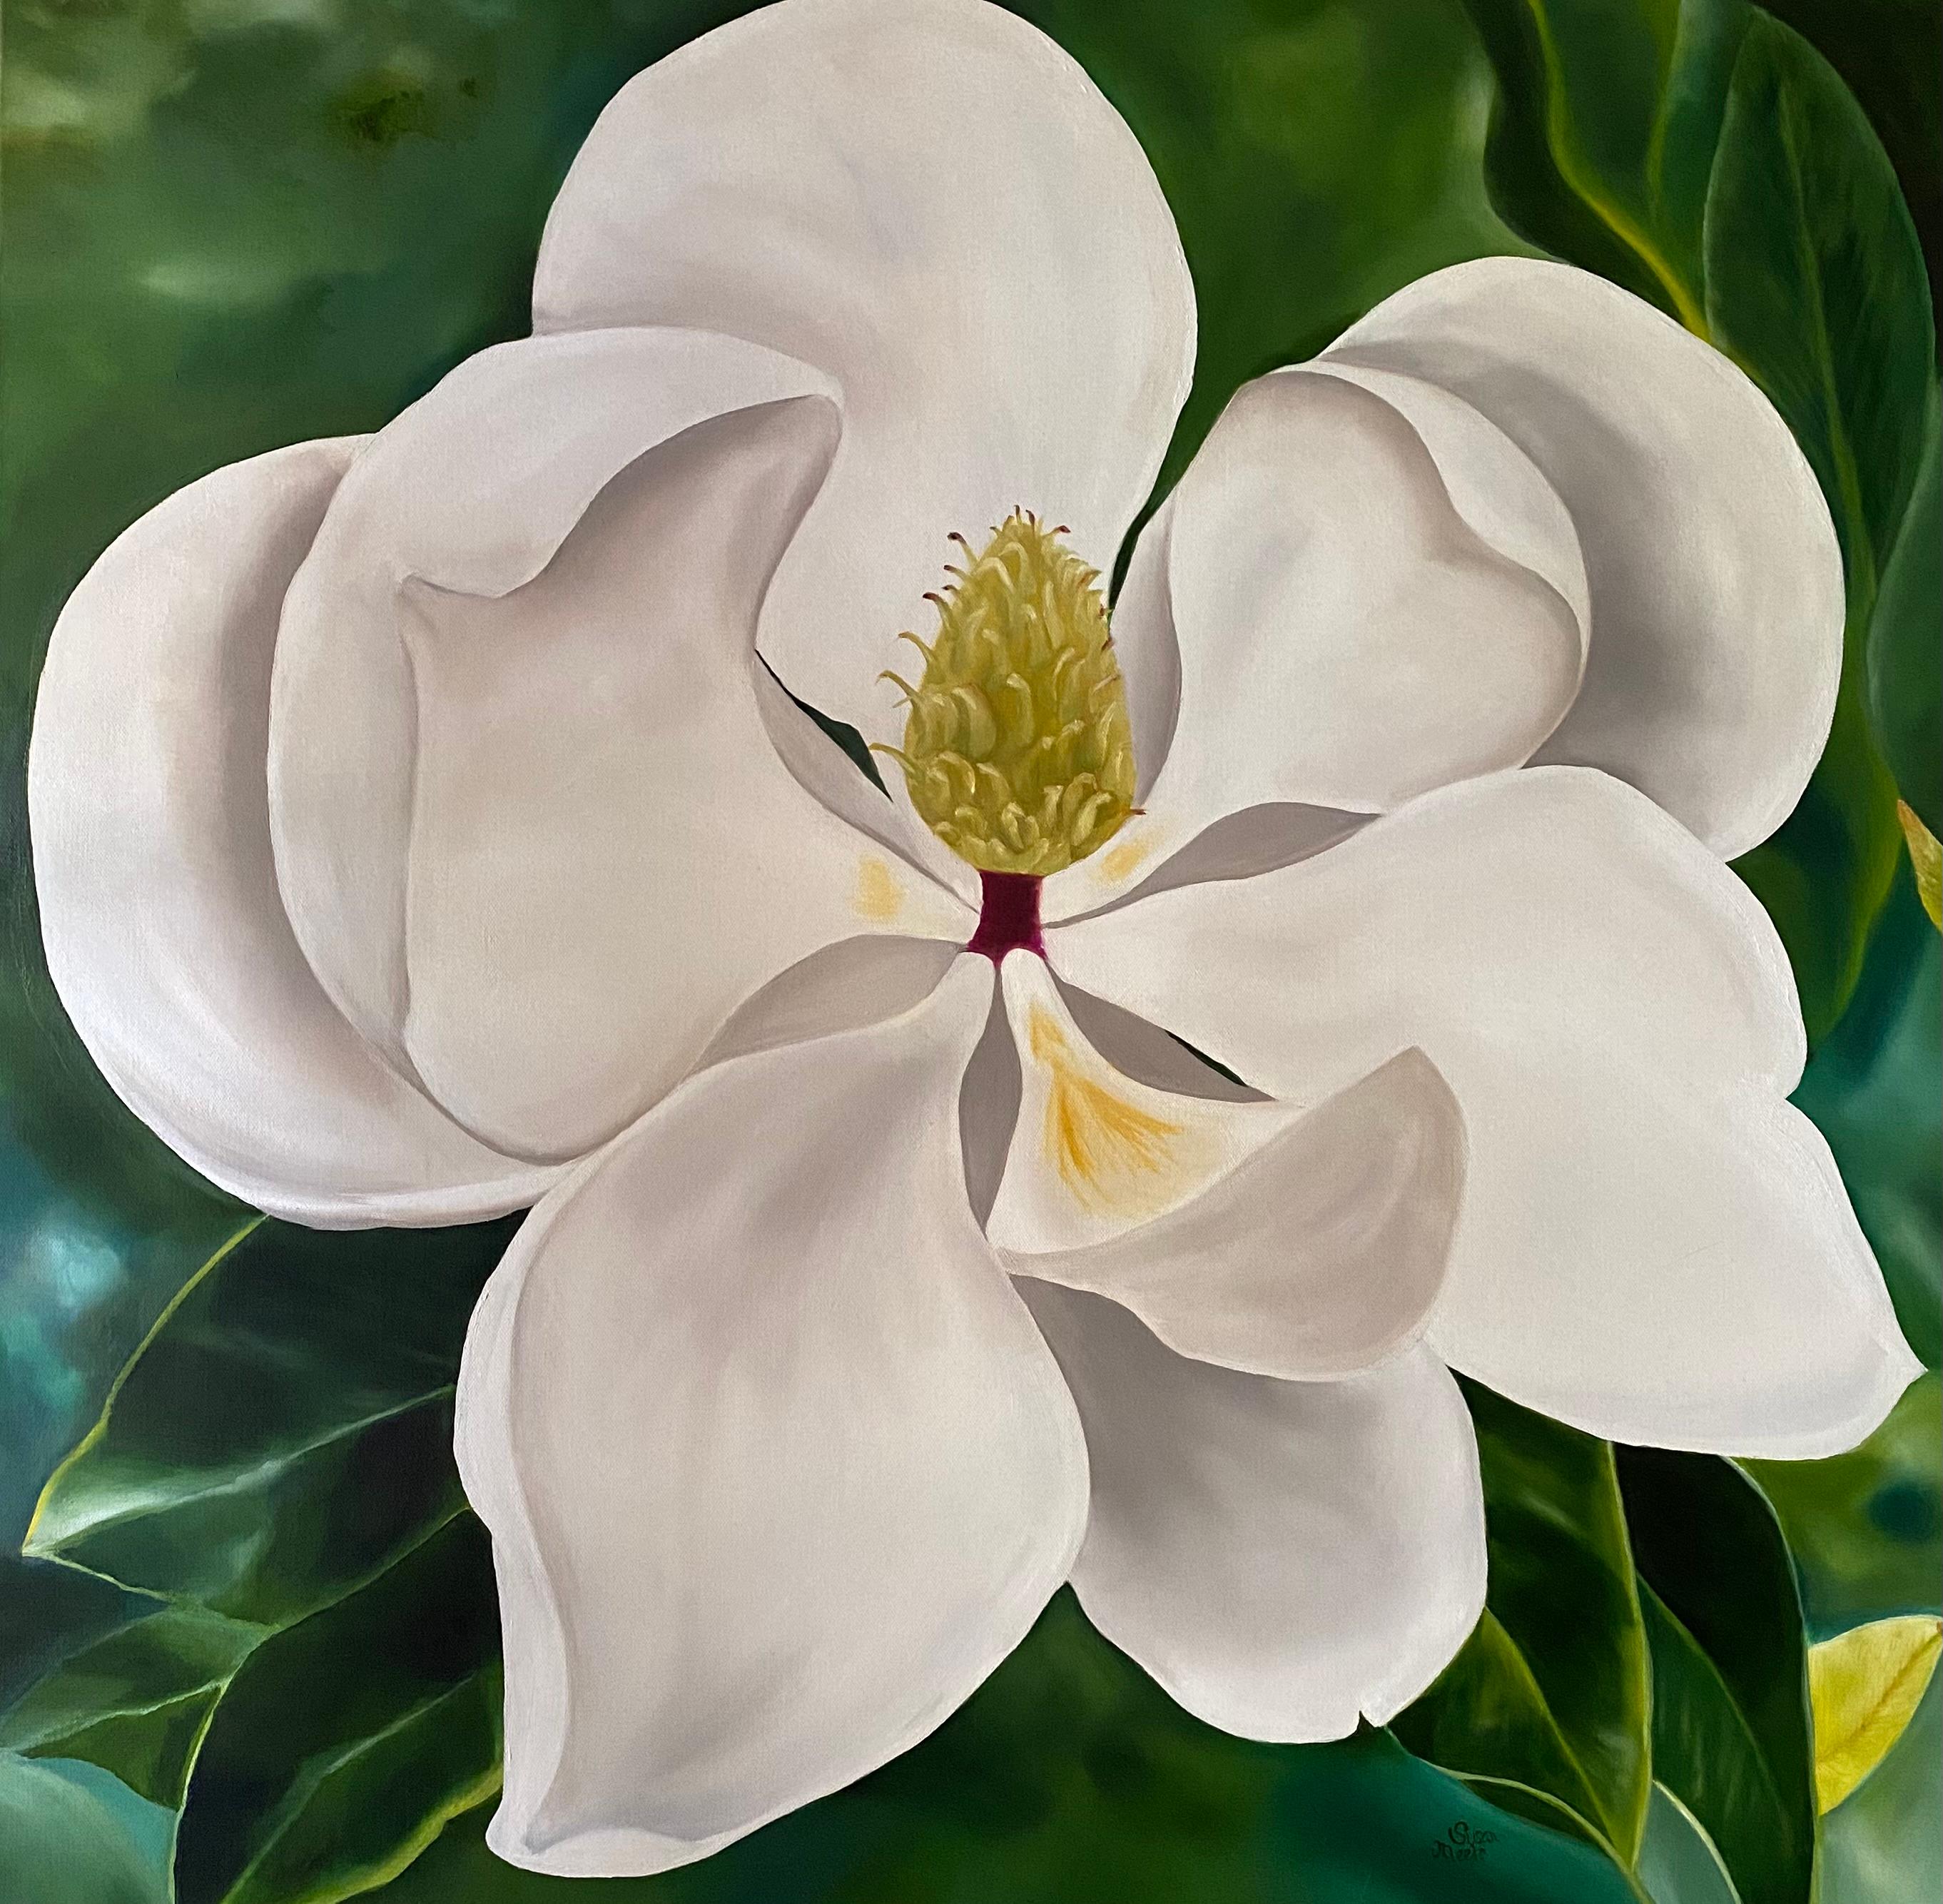  Magnolia géant  Réalisme 36 x 36 Huile sur toile - Galerie enveloppée   Fleuri en vente 1